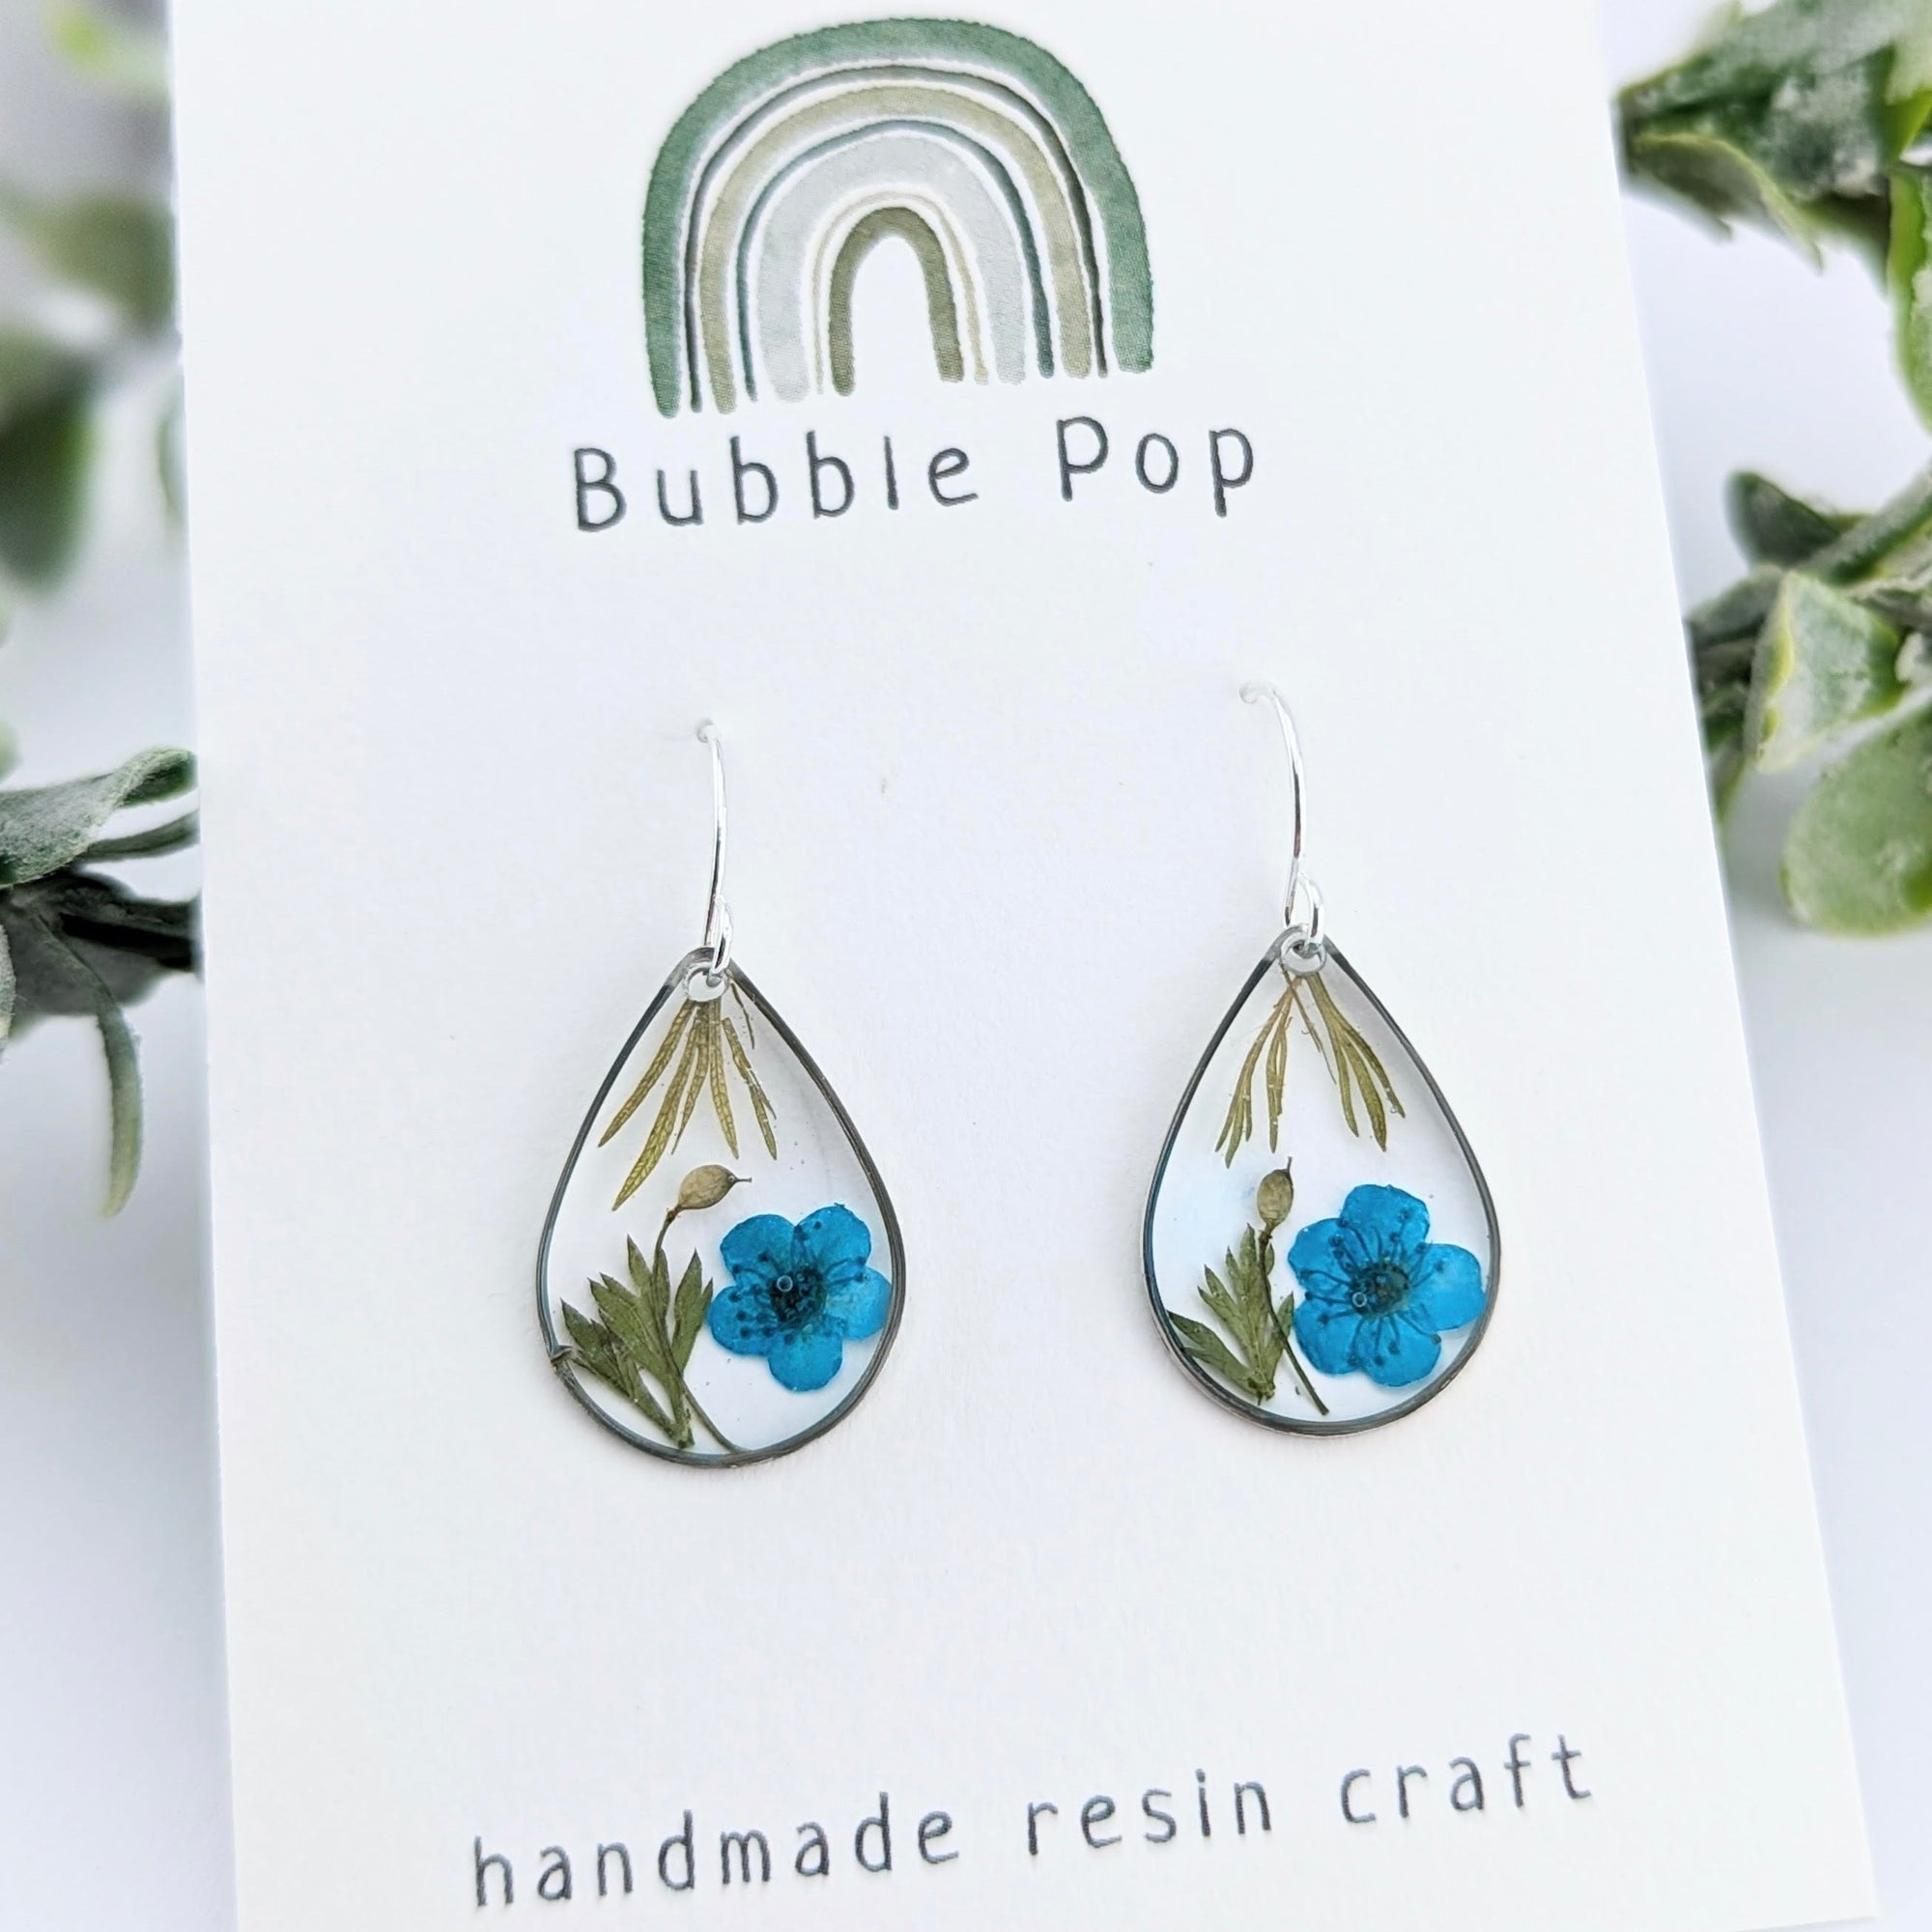 BubblePop | Handmade resin earrings with blue Spirea flowers